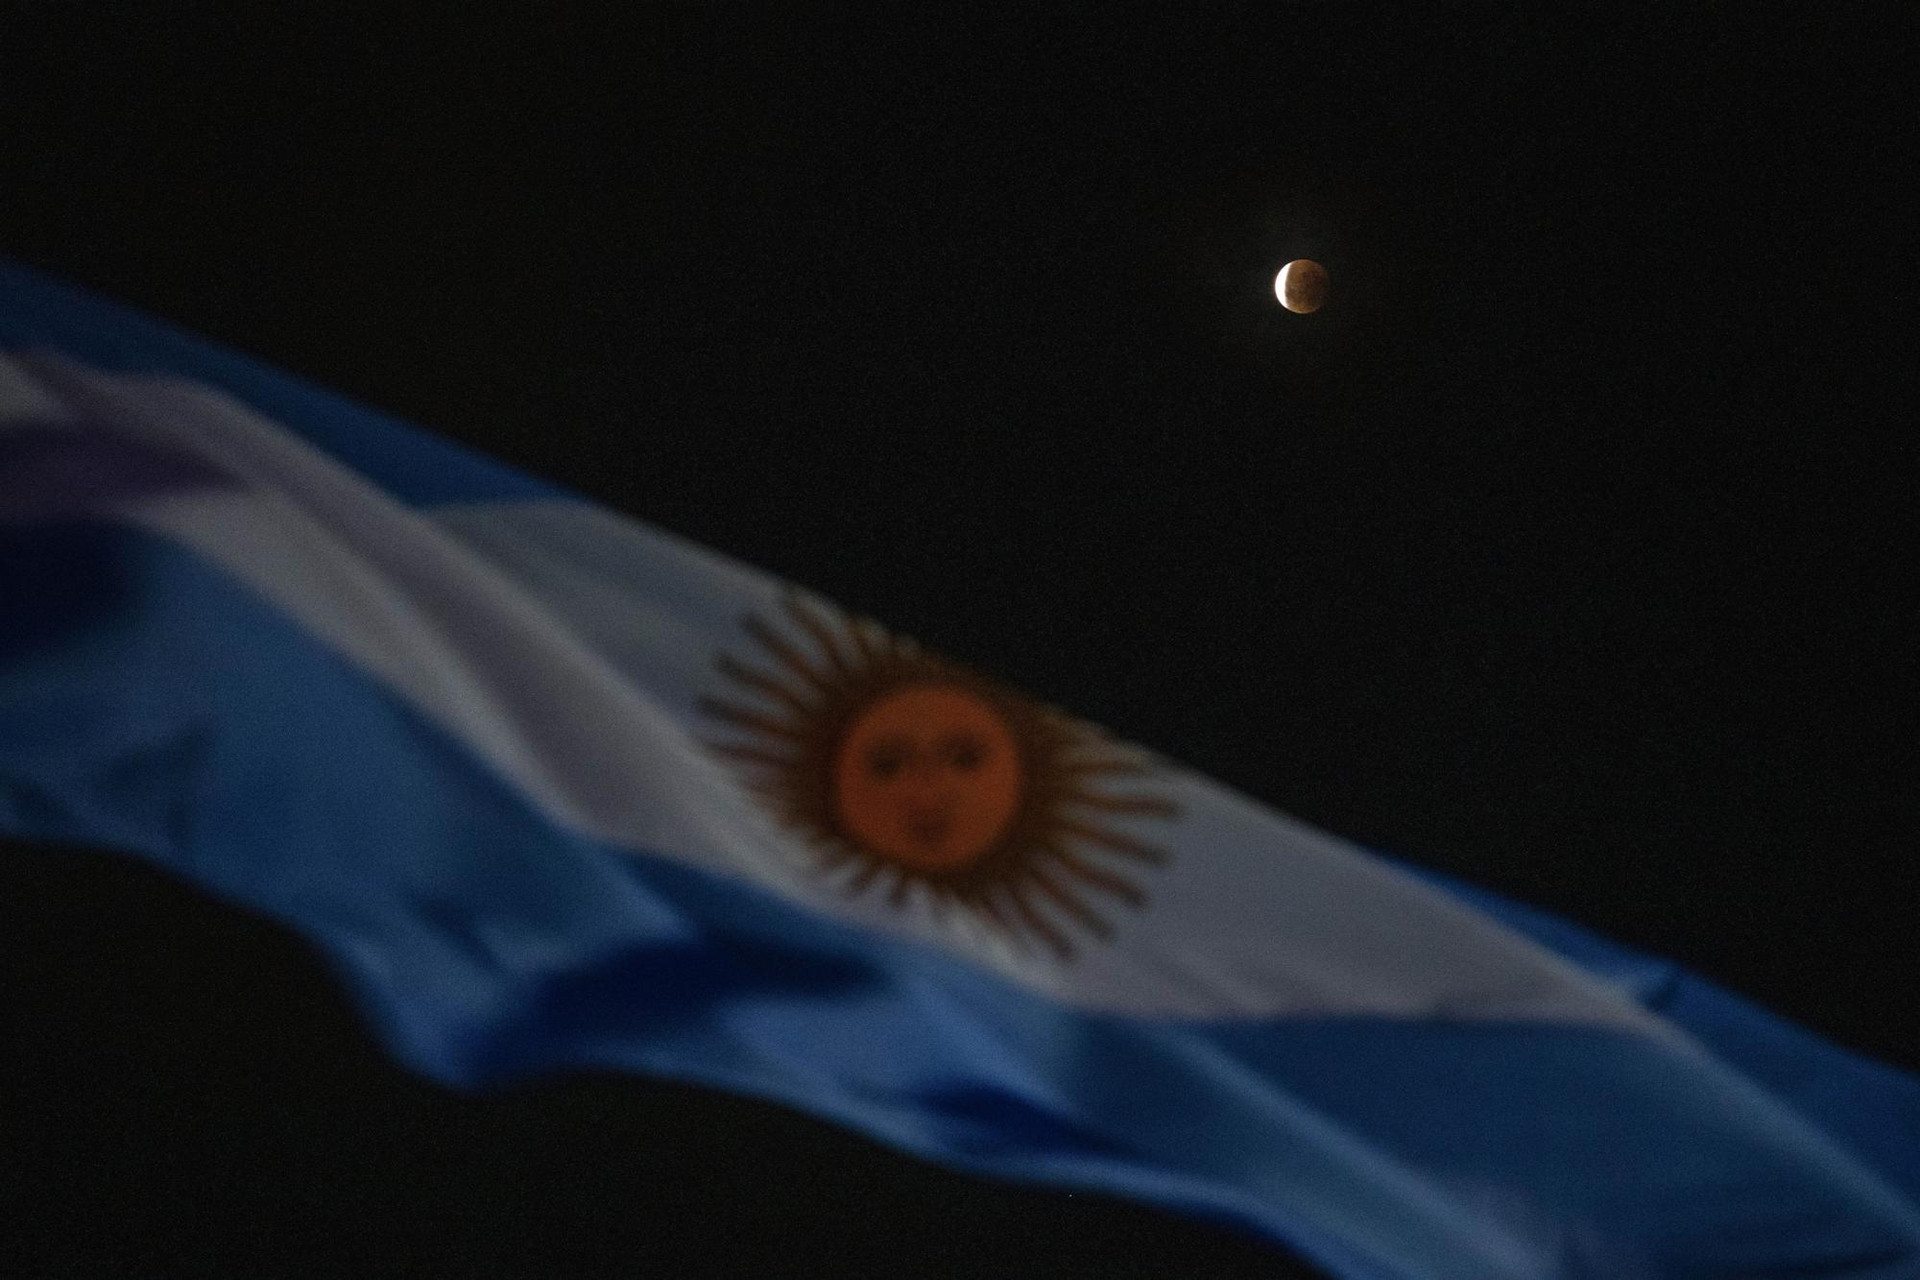 Nguyệt thực đằng sau quốc kỳ Argentina trong tuần trăng máu đầu tiên trong năm ở Buenos Aires, Argentina. Ảnh: AP.